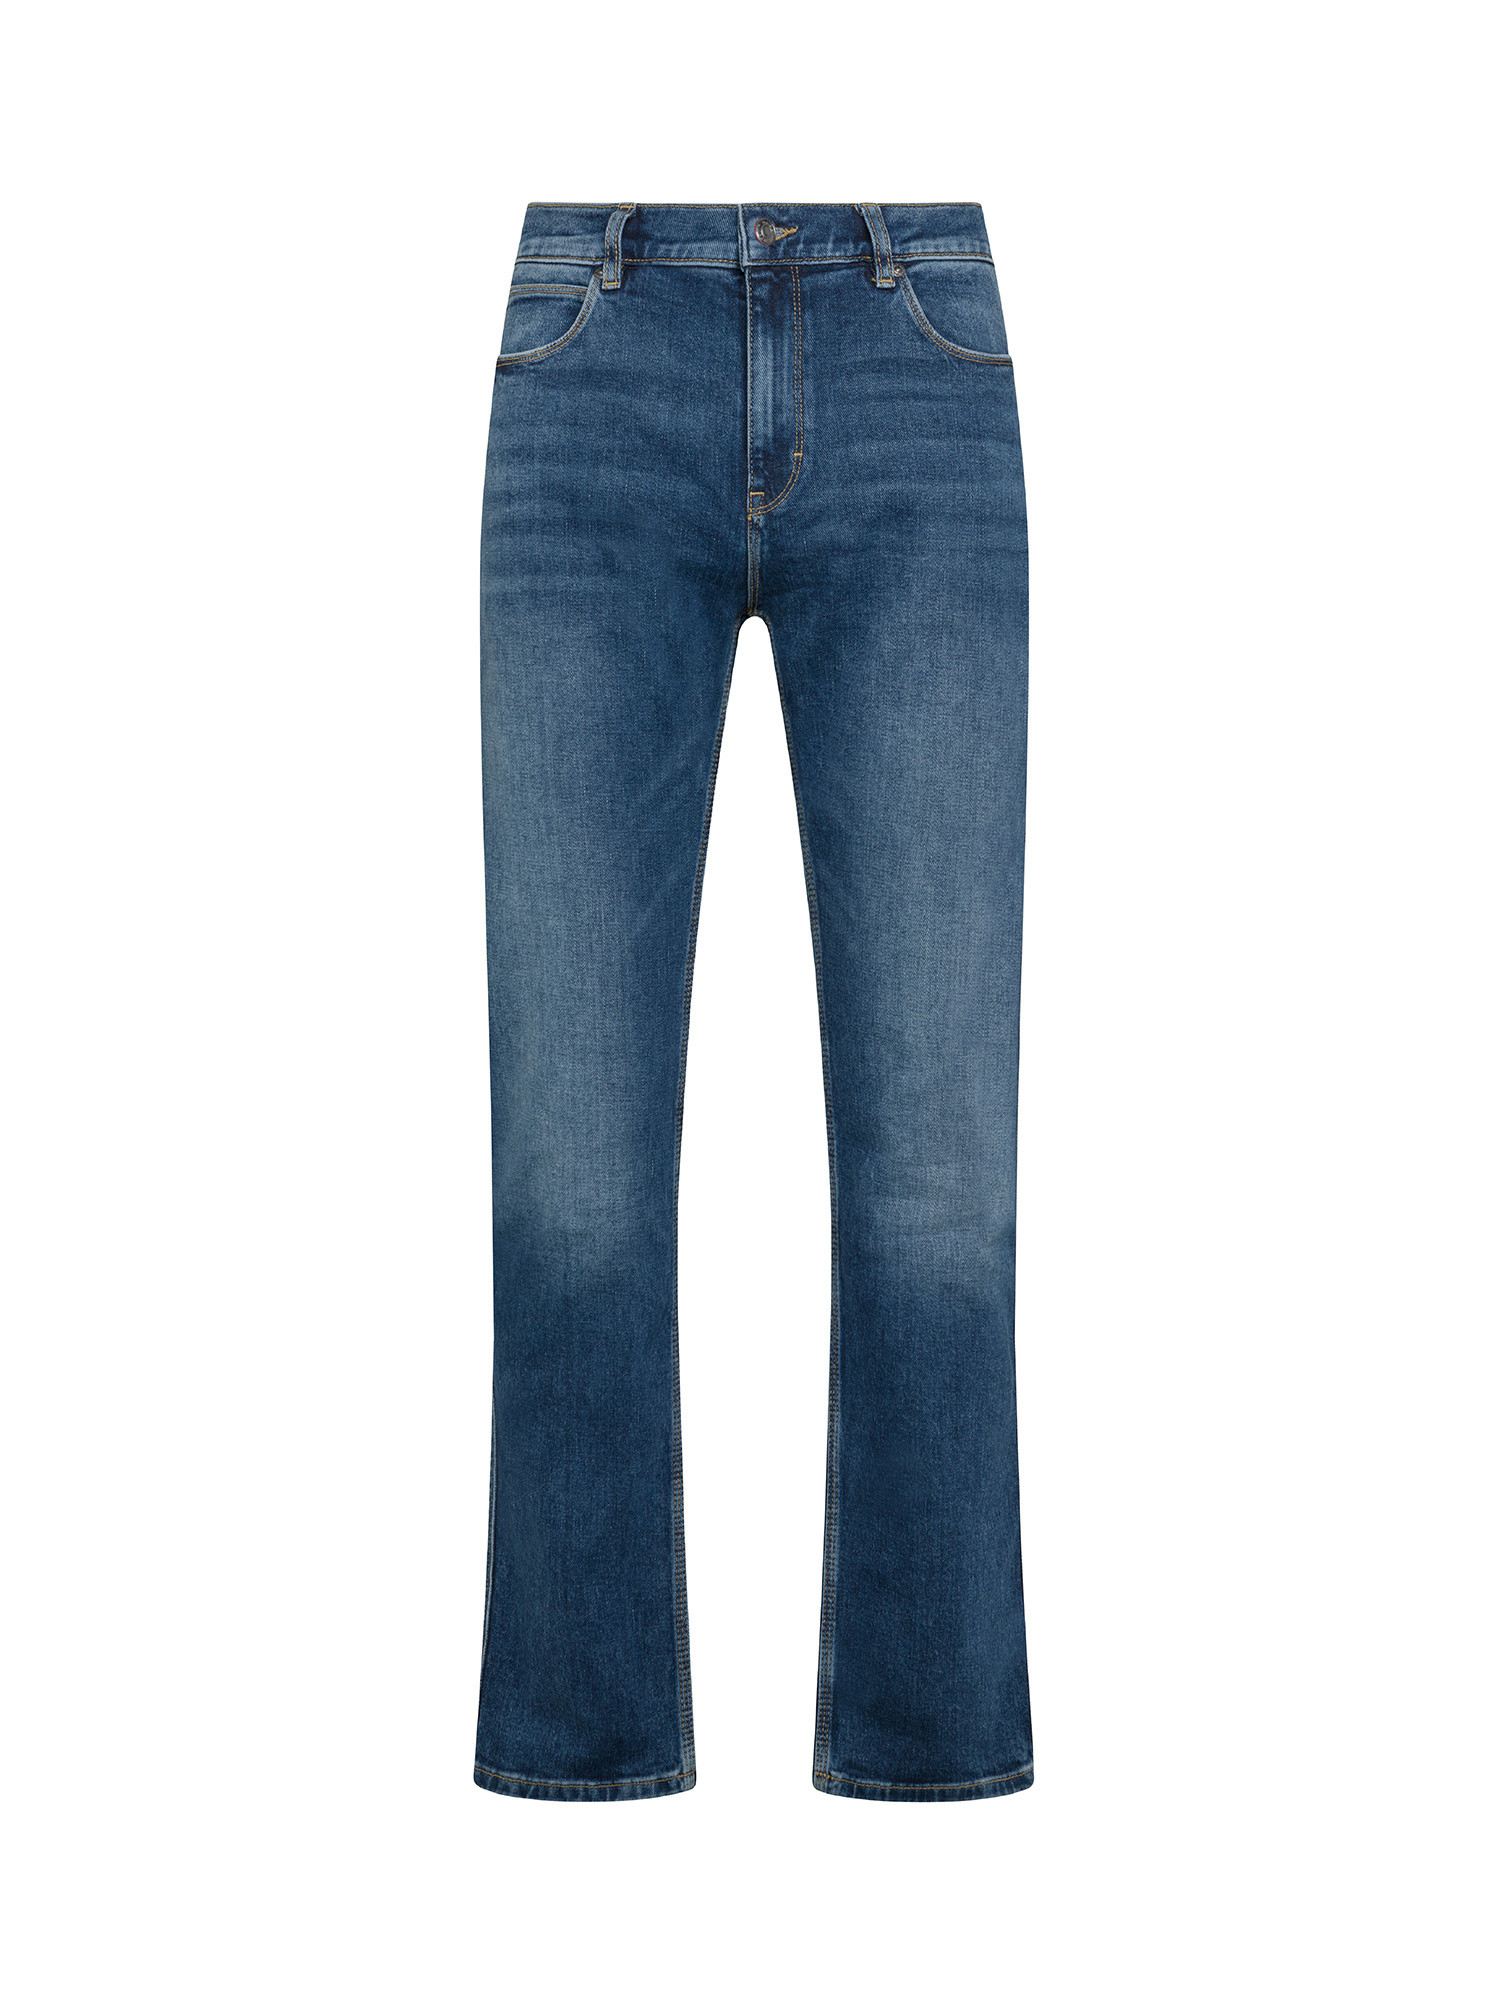 Hugo - Jeans slim fit cinque tasche, Denim, large image number 0